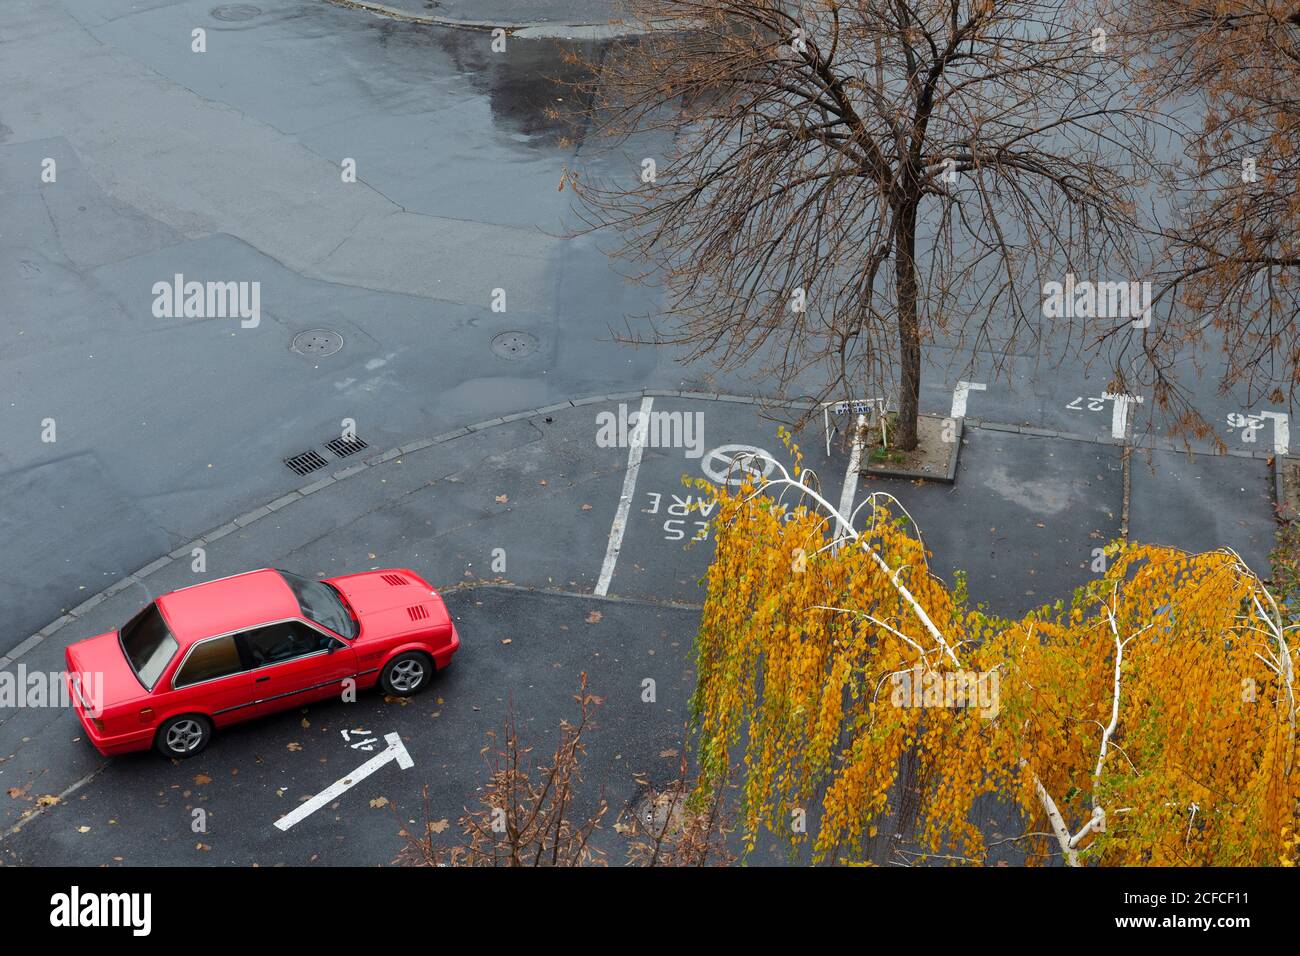 Au-dessus de la vue de la rue sans personnes avec voiture rouge et chute d'arbres dans le cadre Banque D'Images